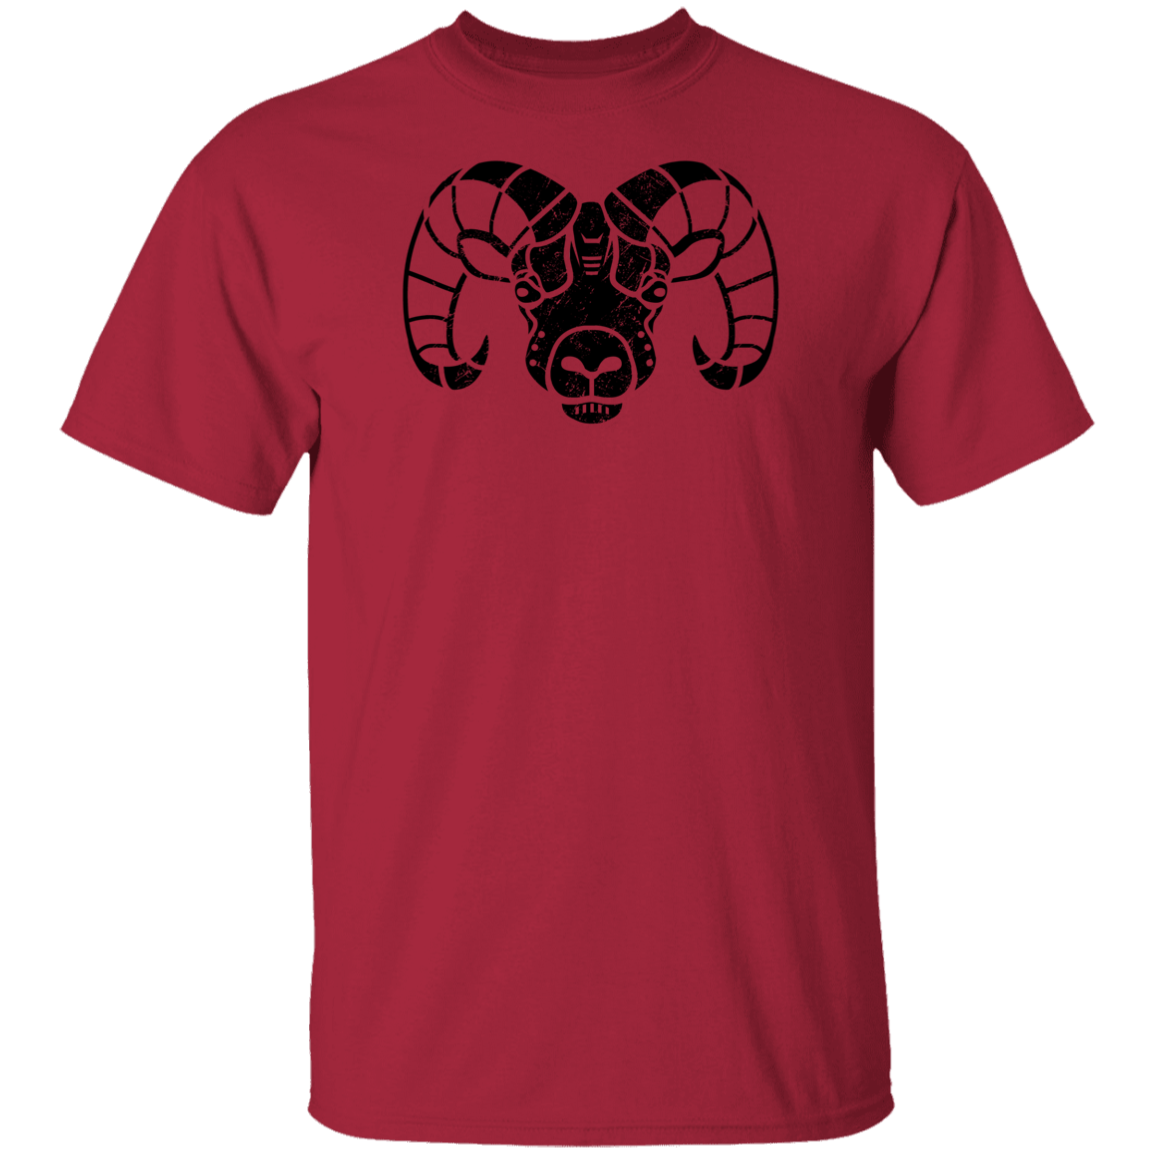 Black Distressed Emblem T-Shirt for Kids (Big Horn Sheep/Matterhorn)